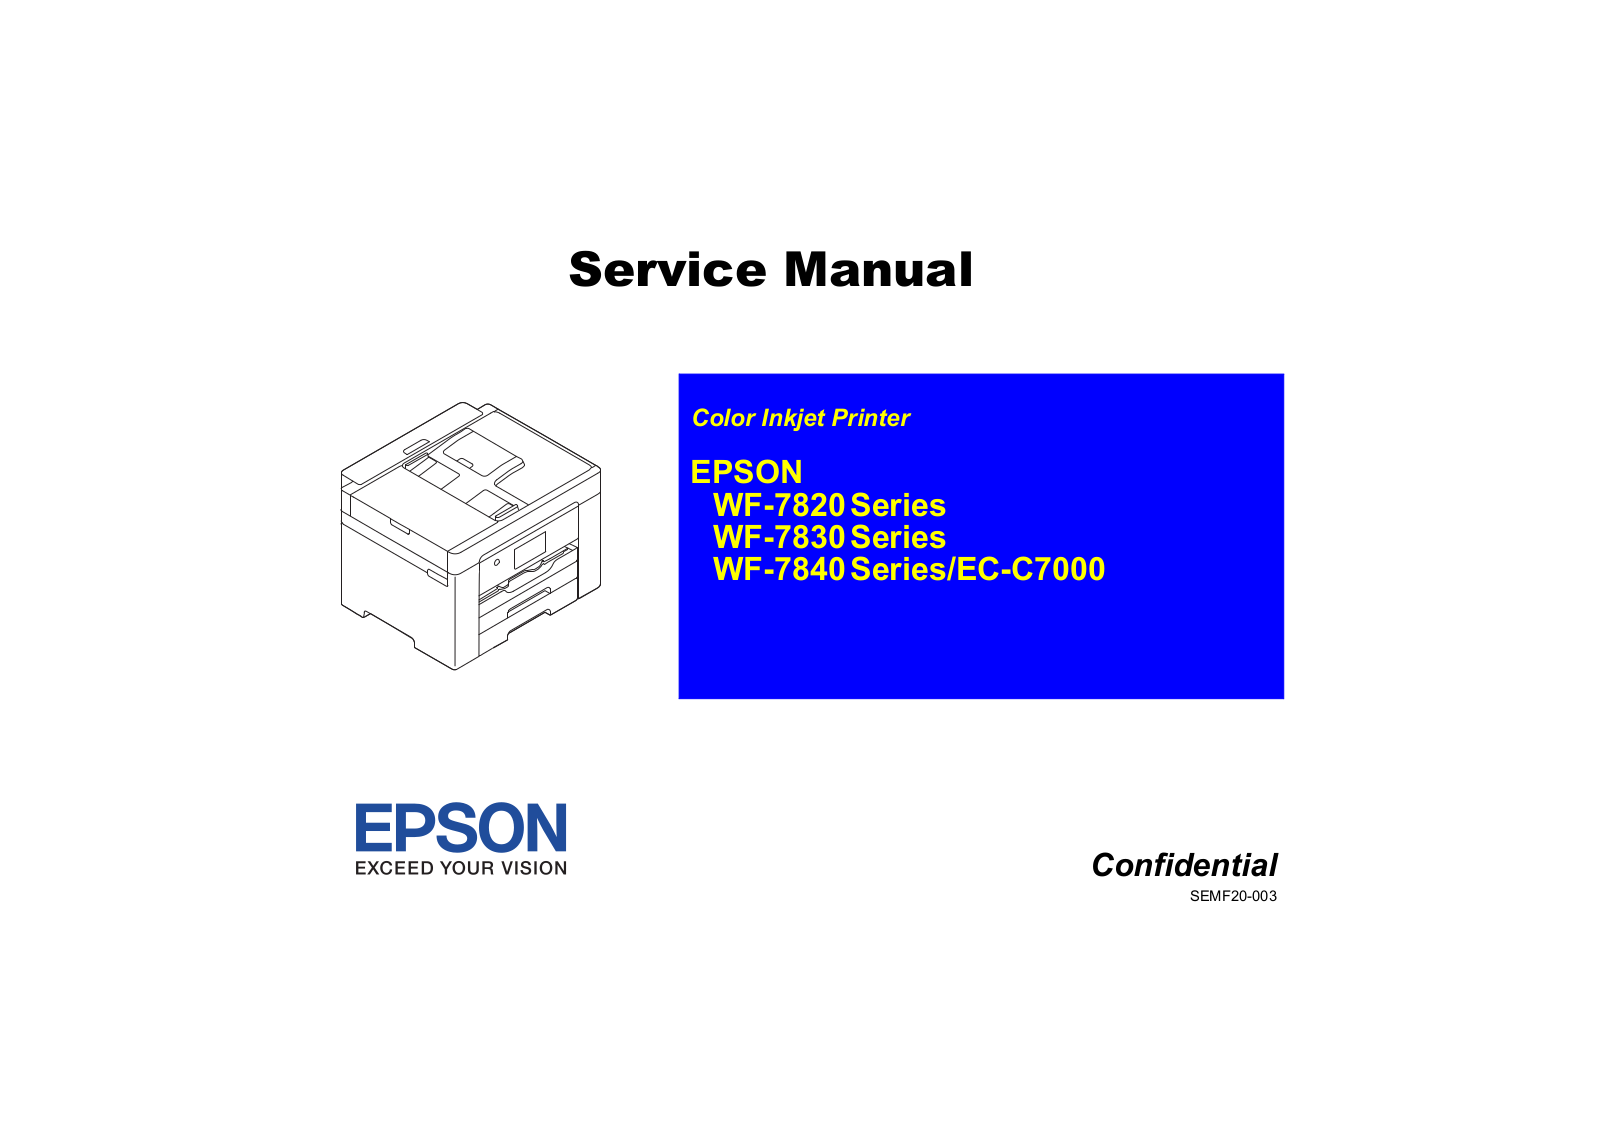 Epson WF-7820, WF-7830, WF-7840, EC-C7000 Service Manual